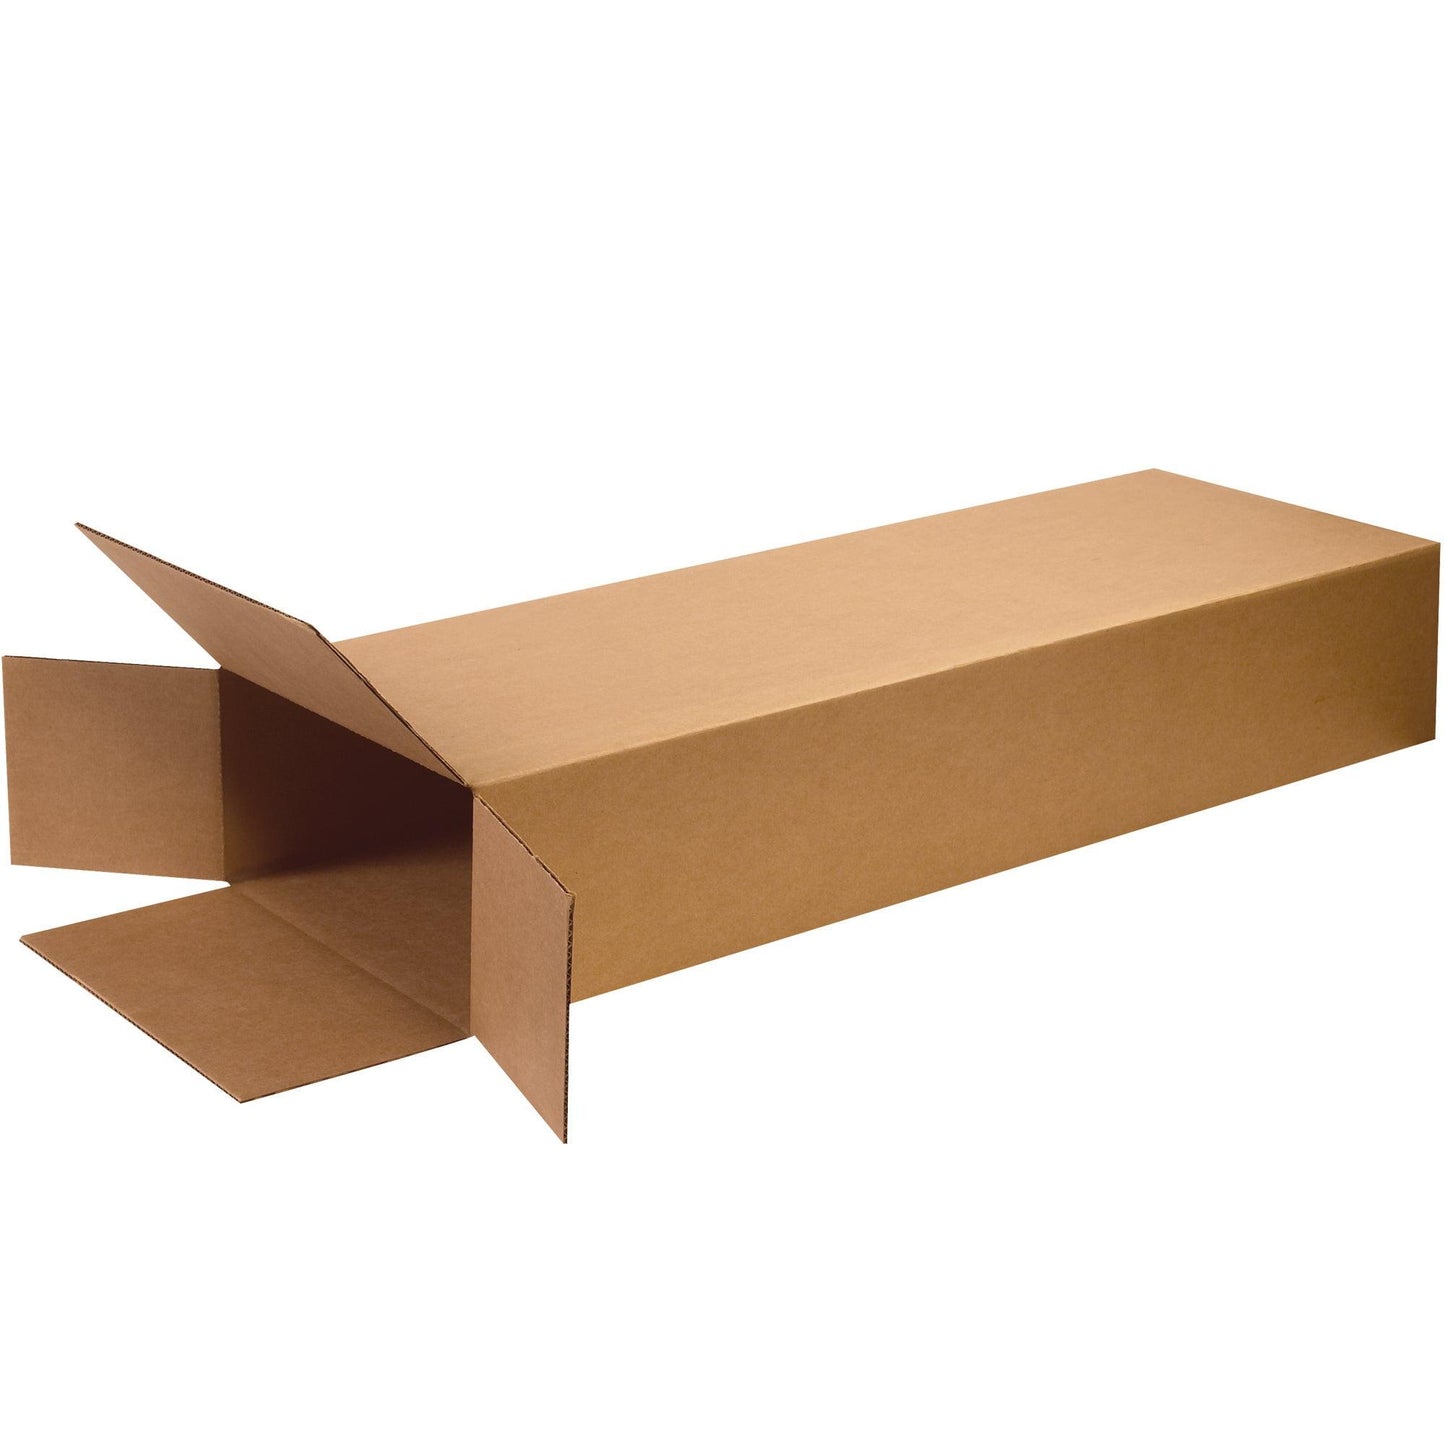 18 x 7 x 52" Side Loading Boxes - HD18752FOL